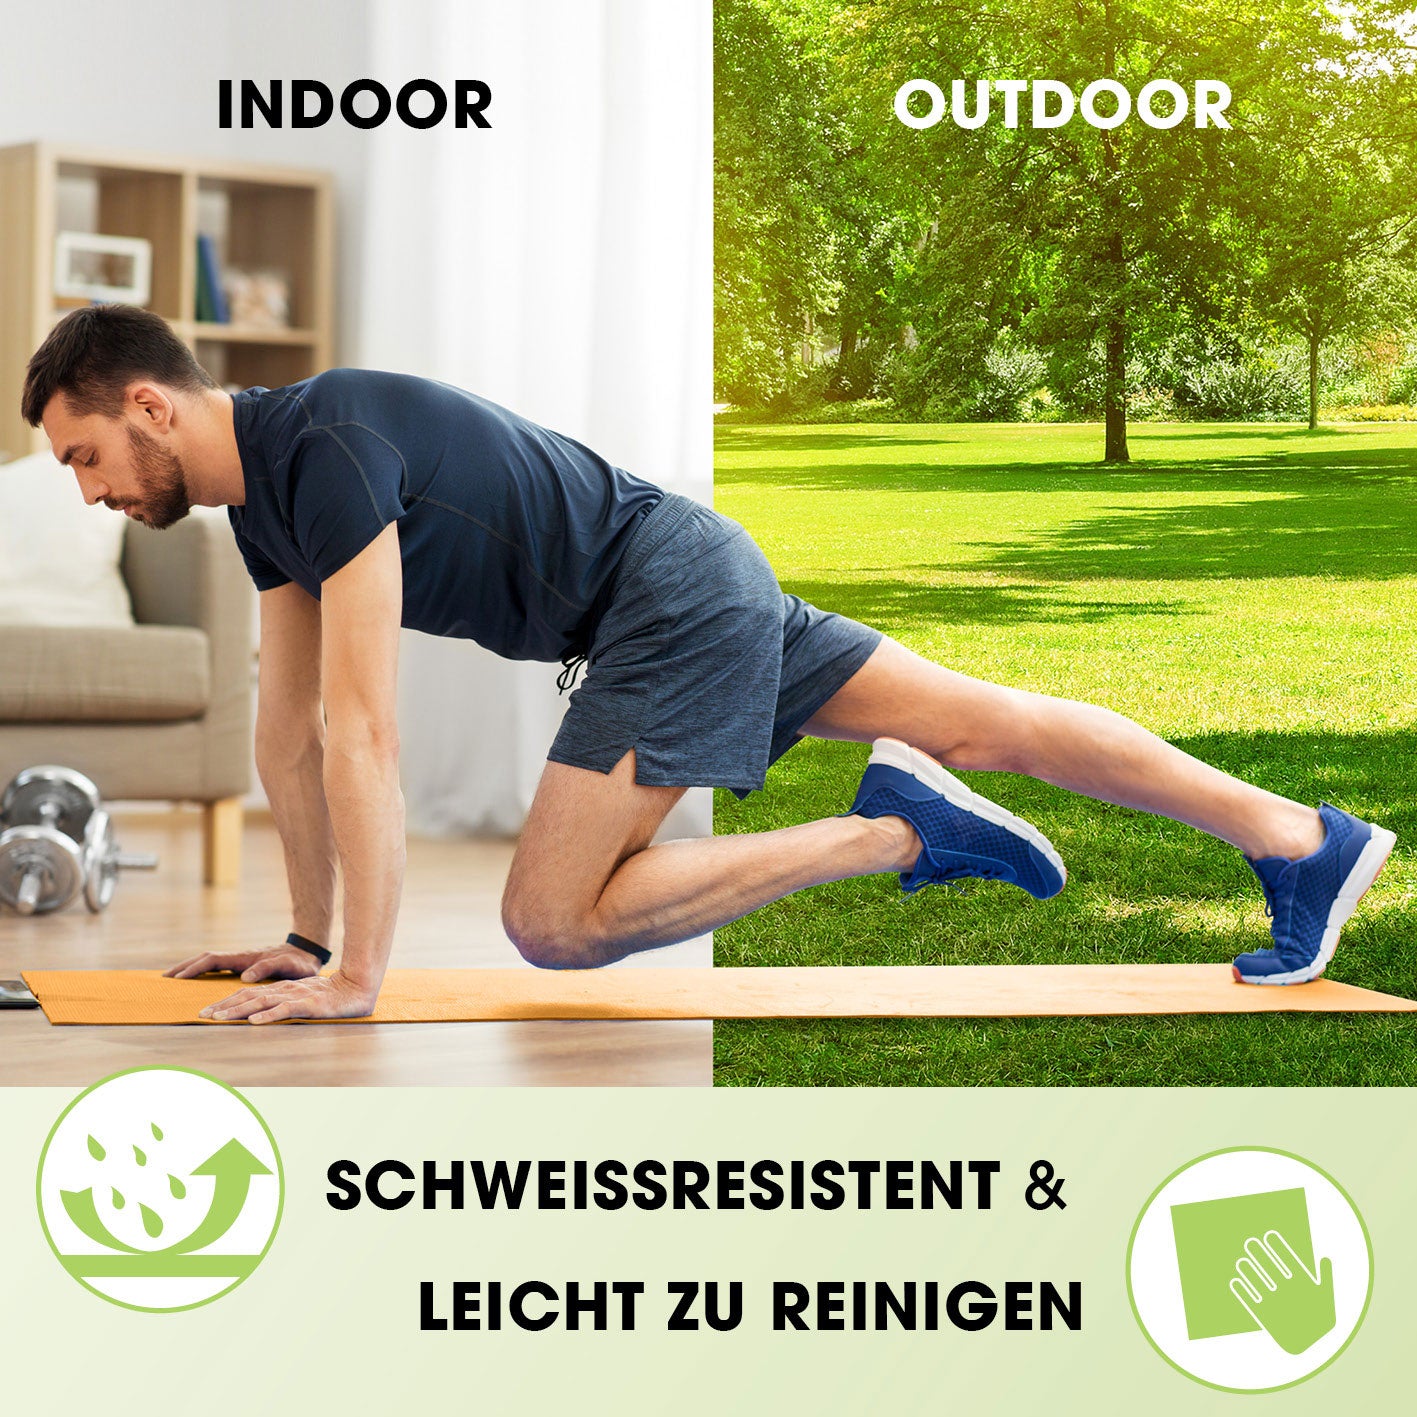 Fitness- und Gymnastikmatte - 183 x 61 x 1,5 cm - Grün